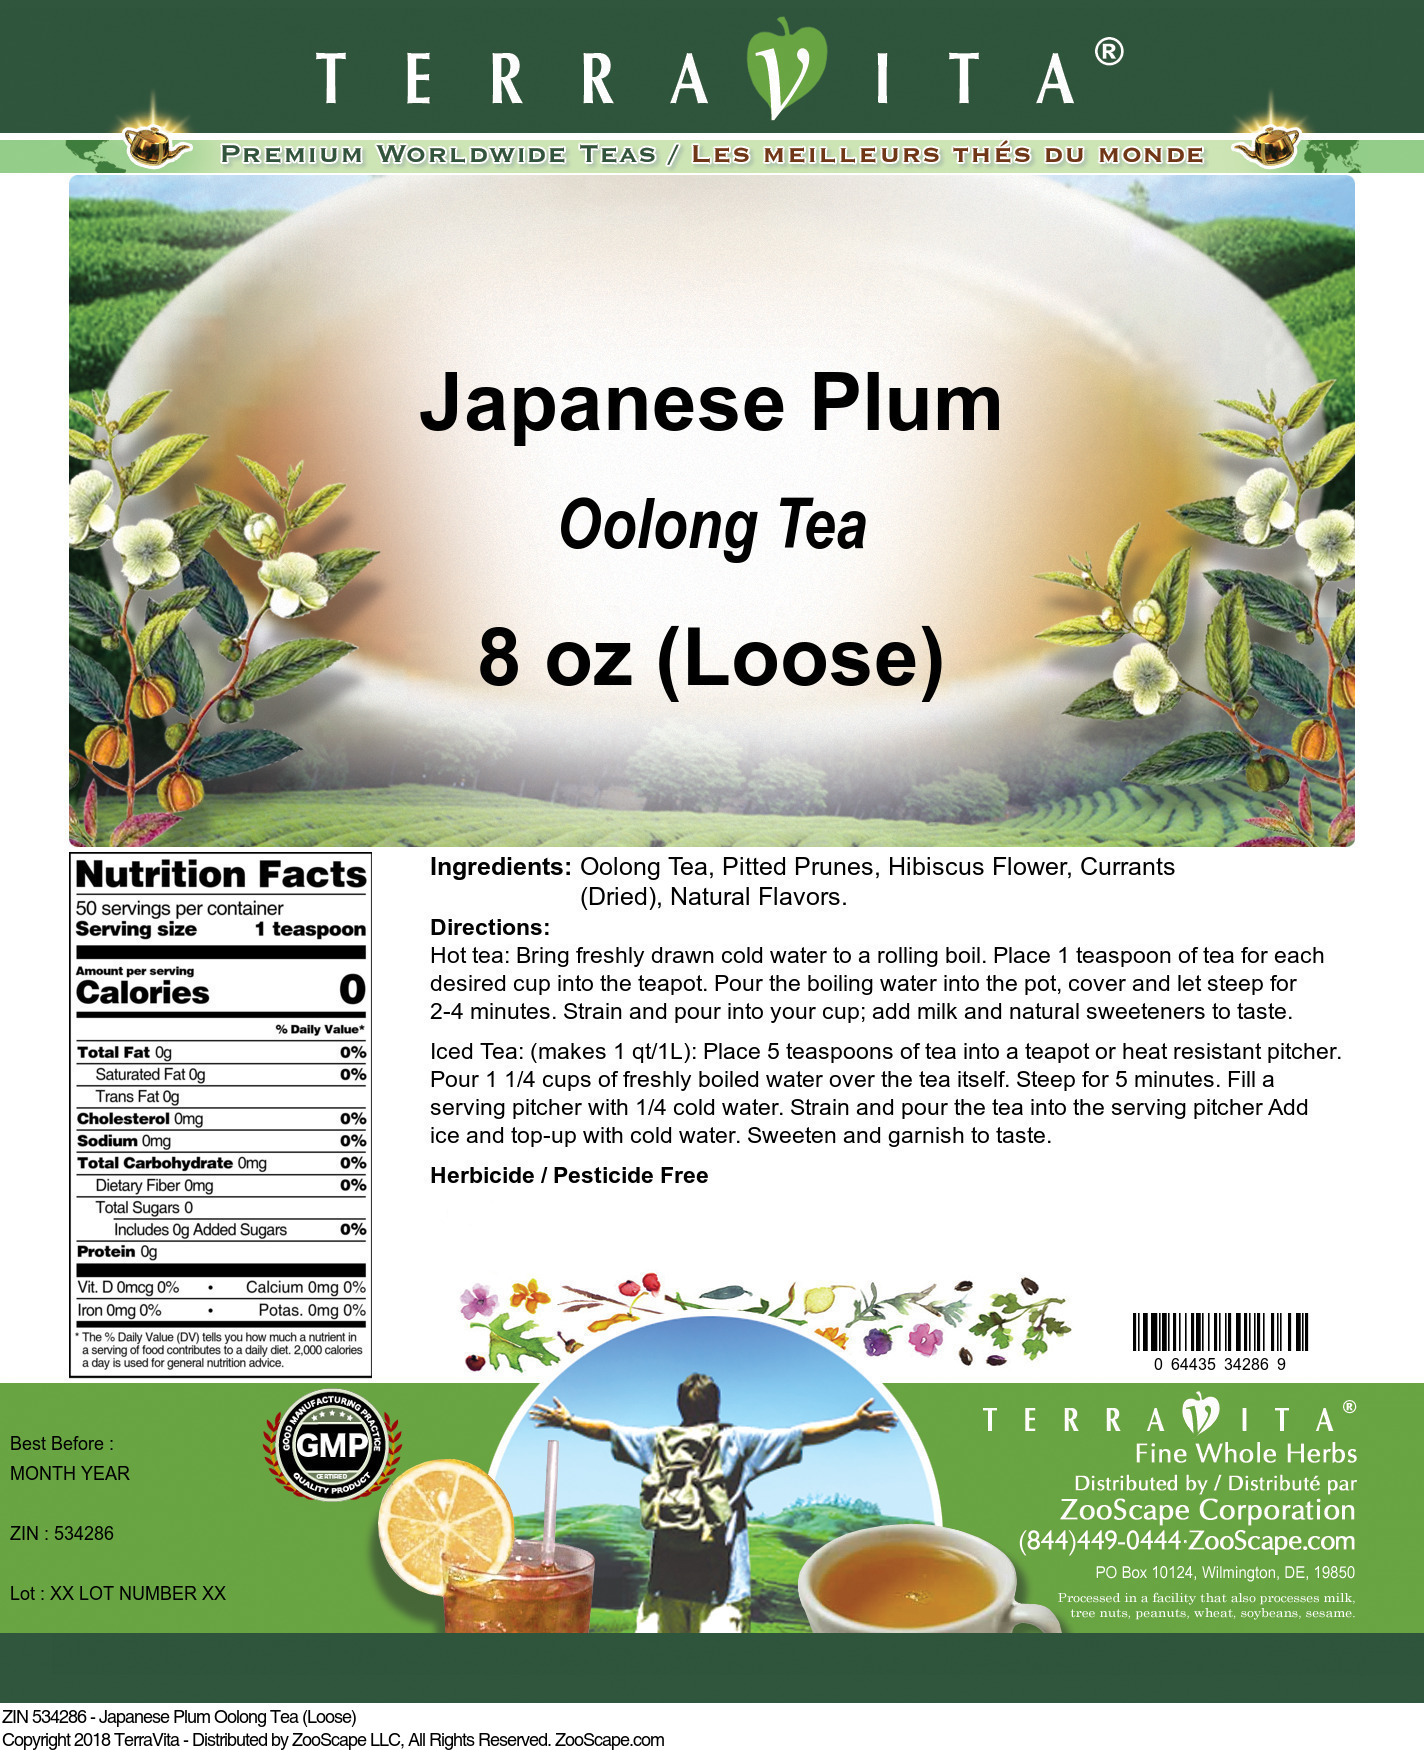 Japanese Plum Oolong Tea (Loose) - Label